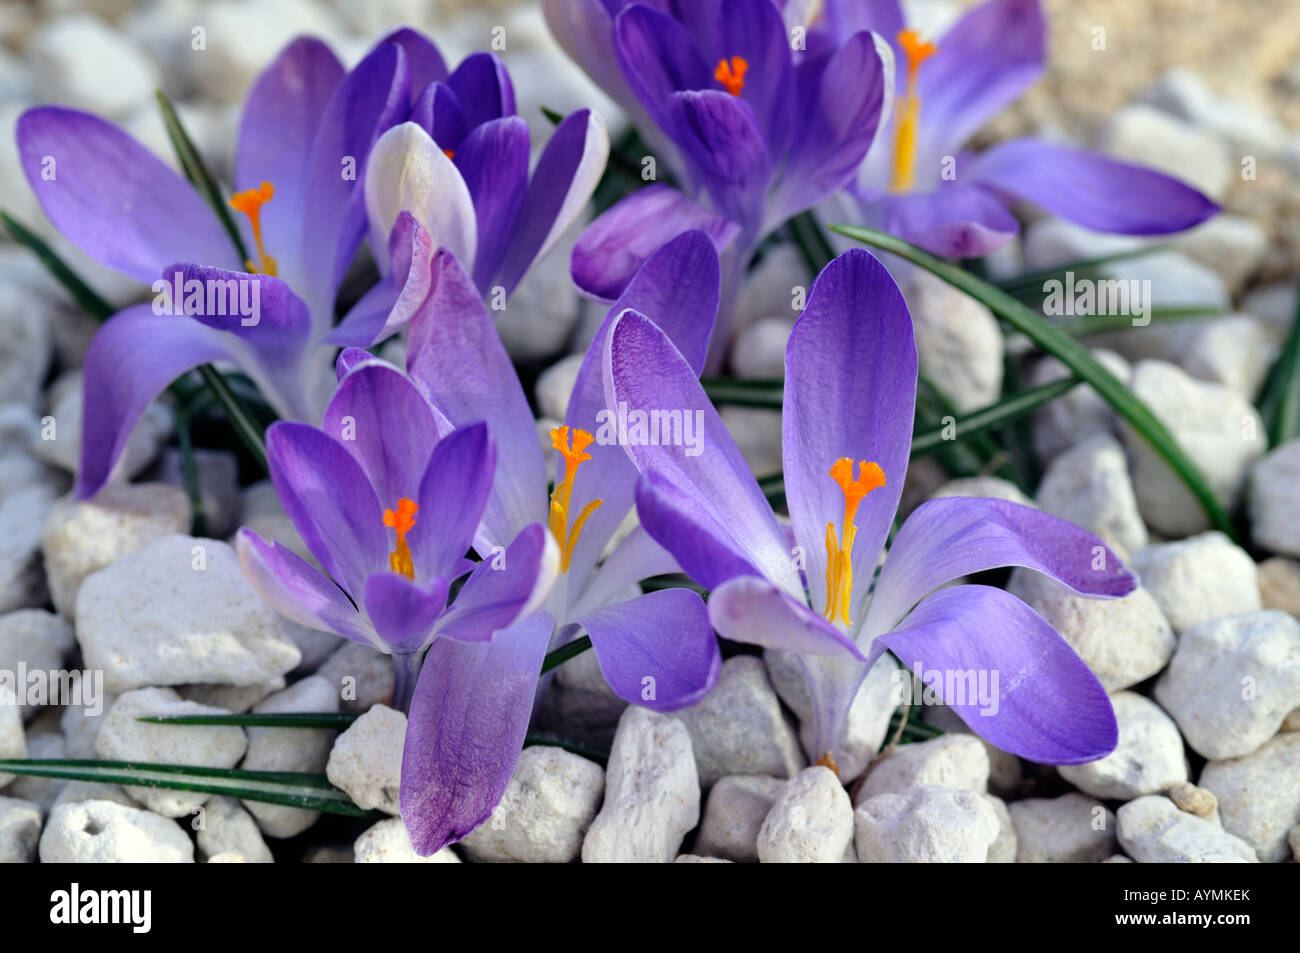 Crocus margot Close up del gruppo di aprire il blu viola pallido venato di lavanda w/ crocus lilla fiori che crescono in ghiaia Foto Stock